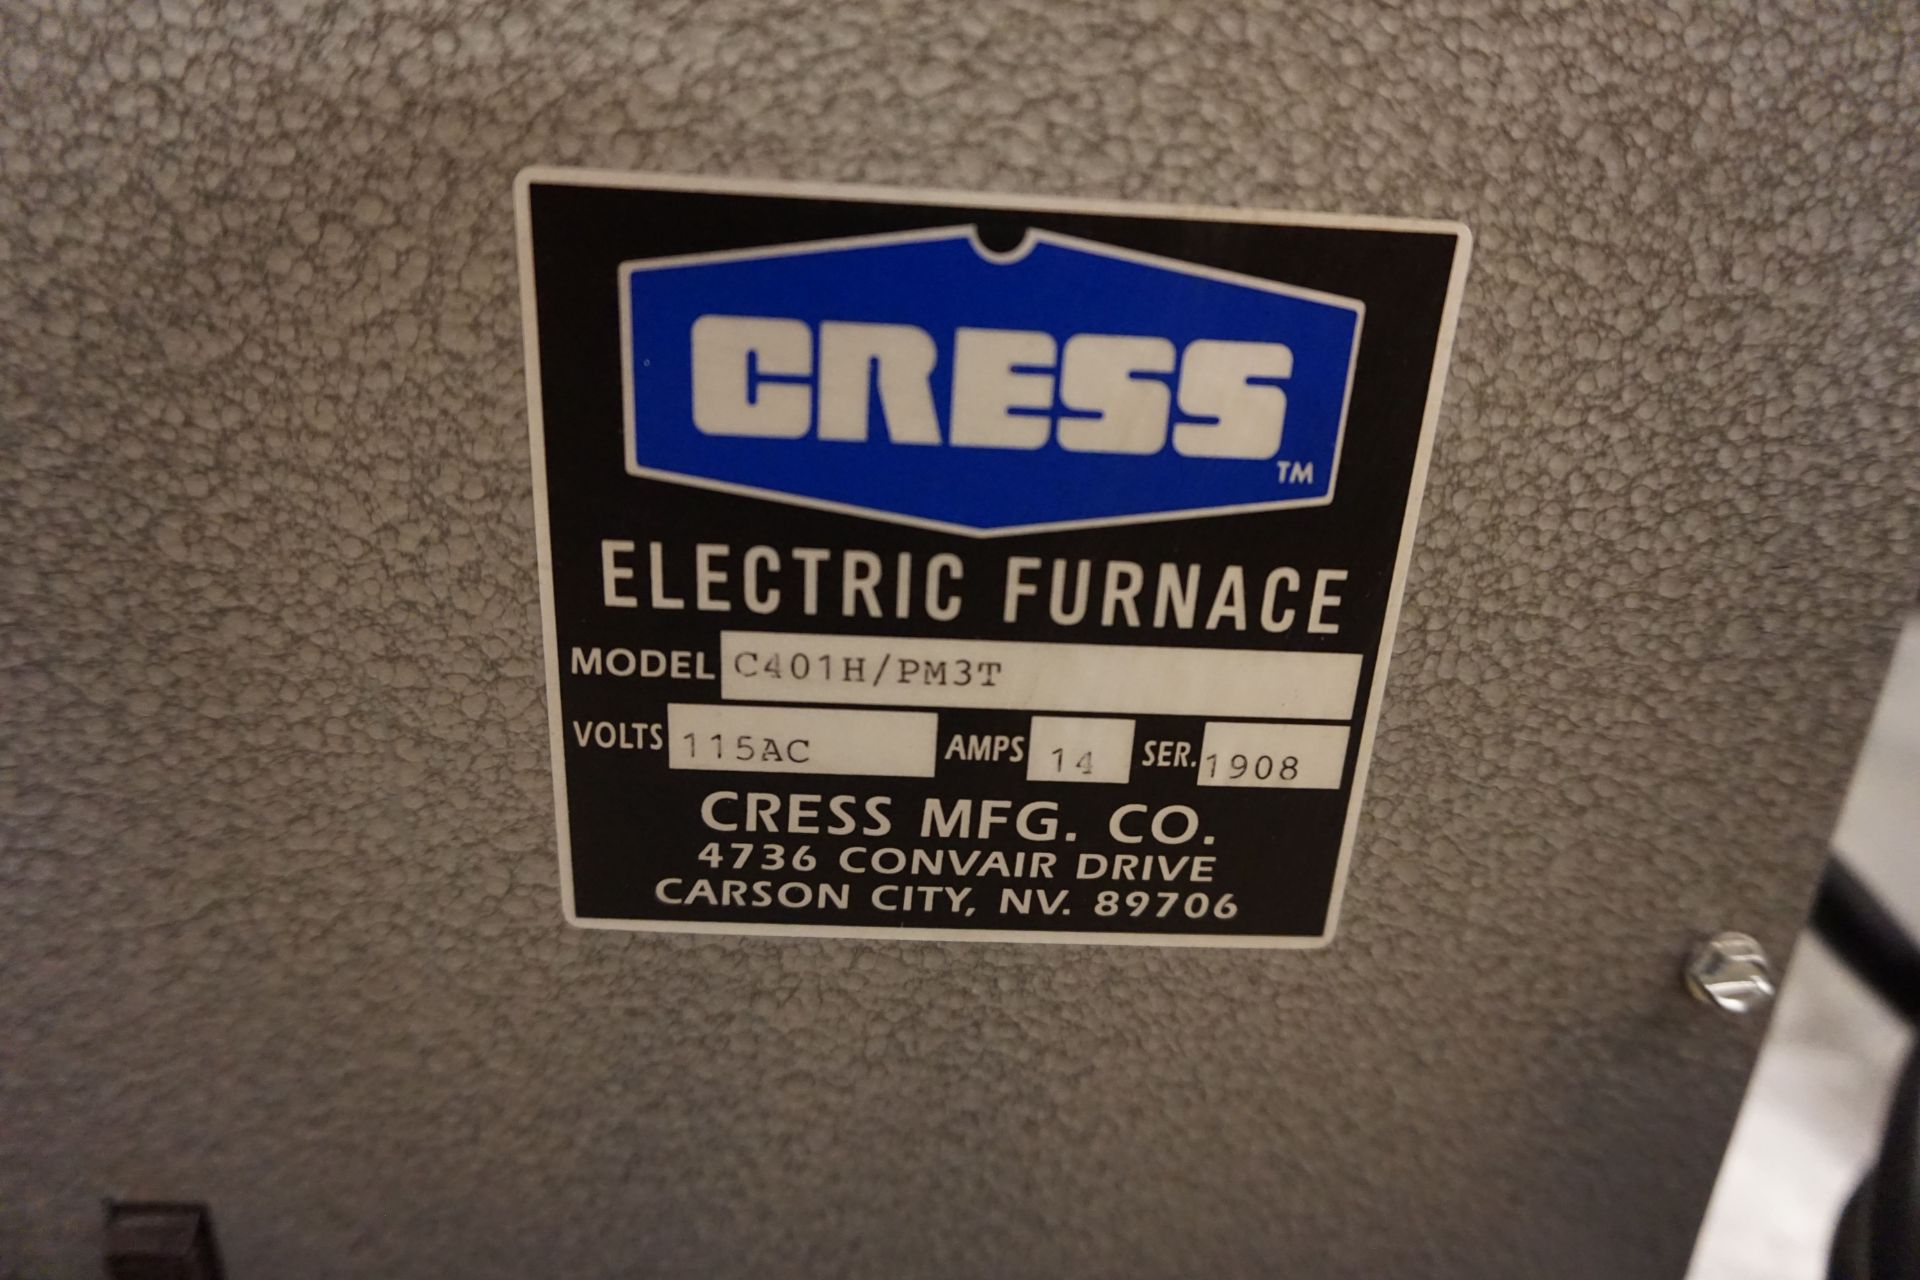 CRESS C401H3MPE ELECTRIC FURNACE, 115AC, 10AMP, 2250 MAX TEMP, .19 CU FT CAP - Image 3 of 3